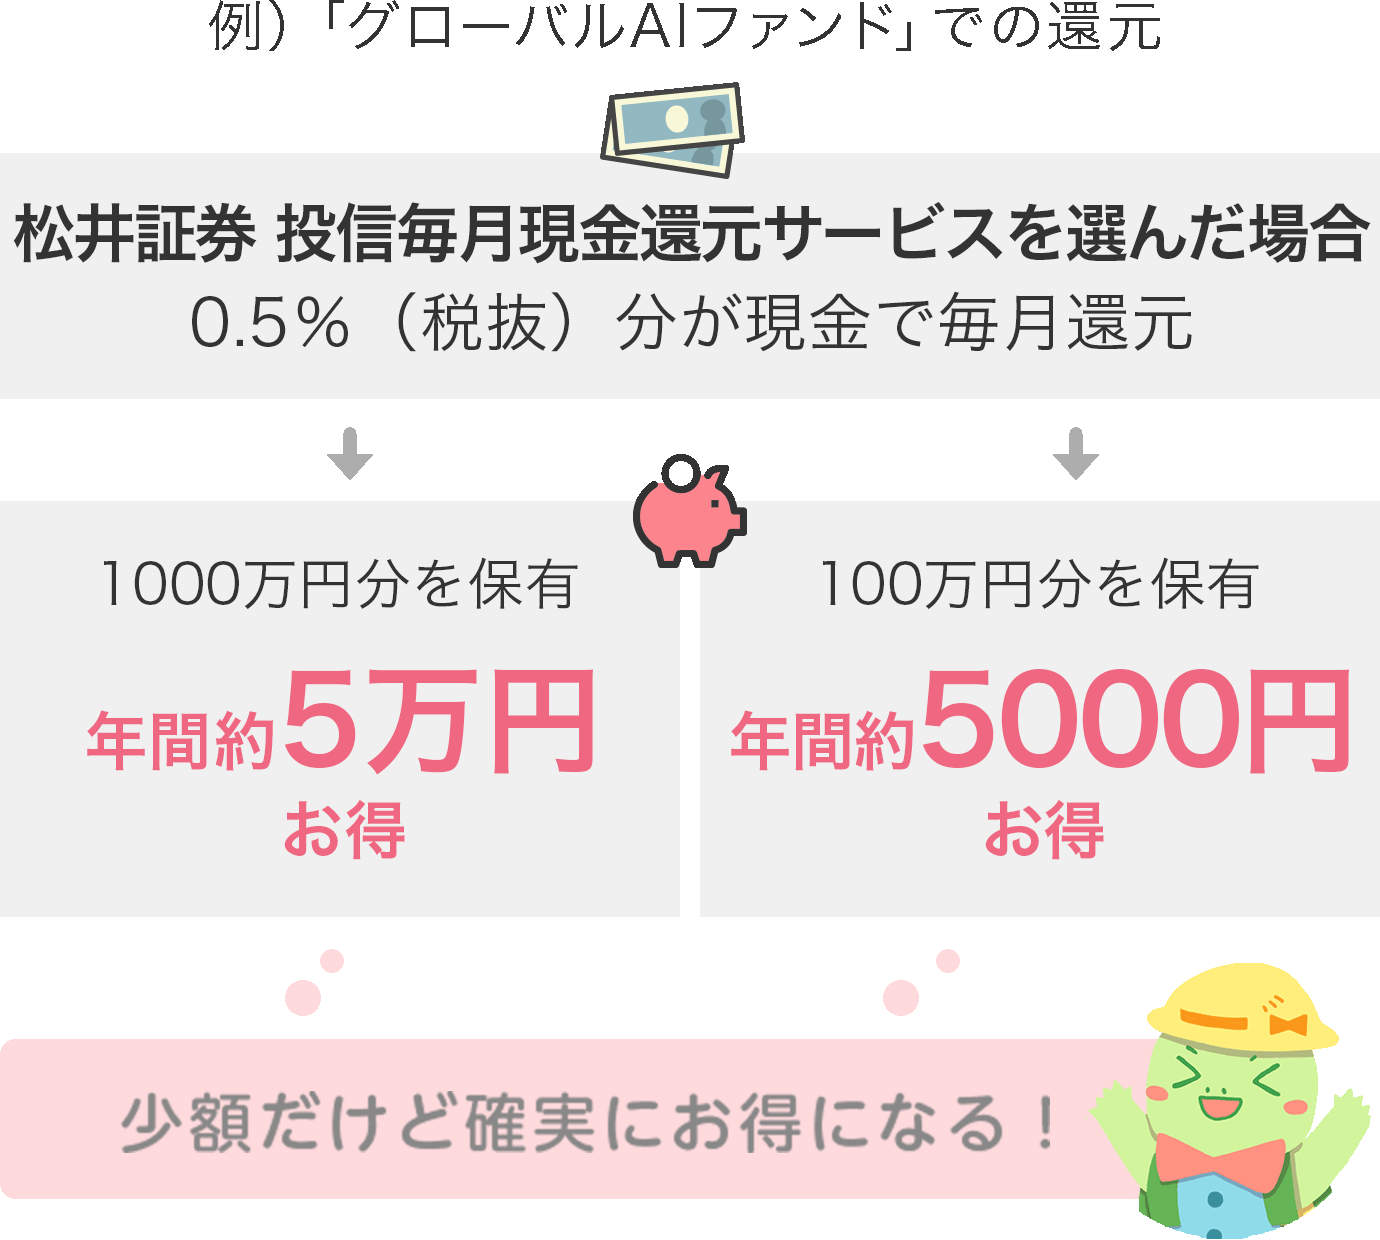 松井証券「投信毎月現金還元サービス」を利用したキャッシュバックの例